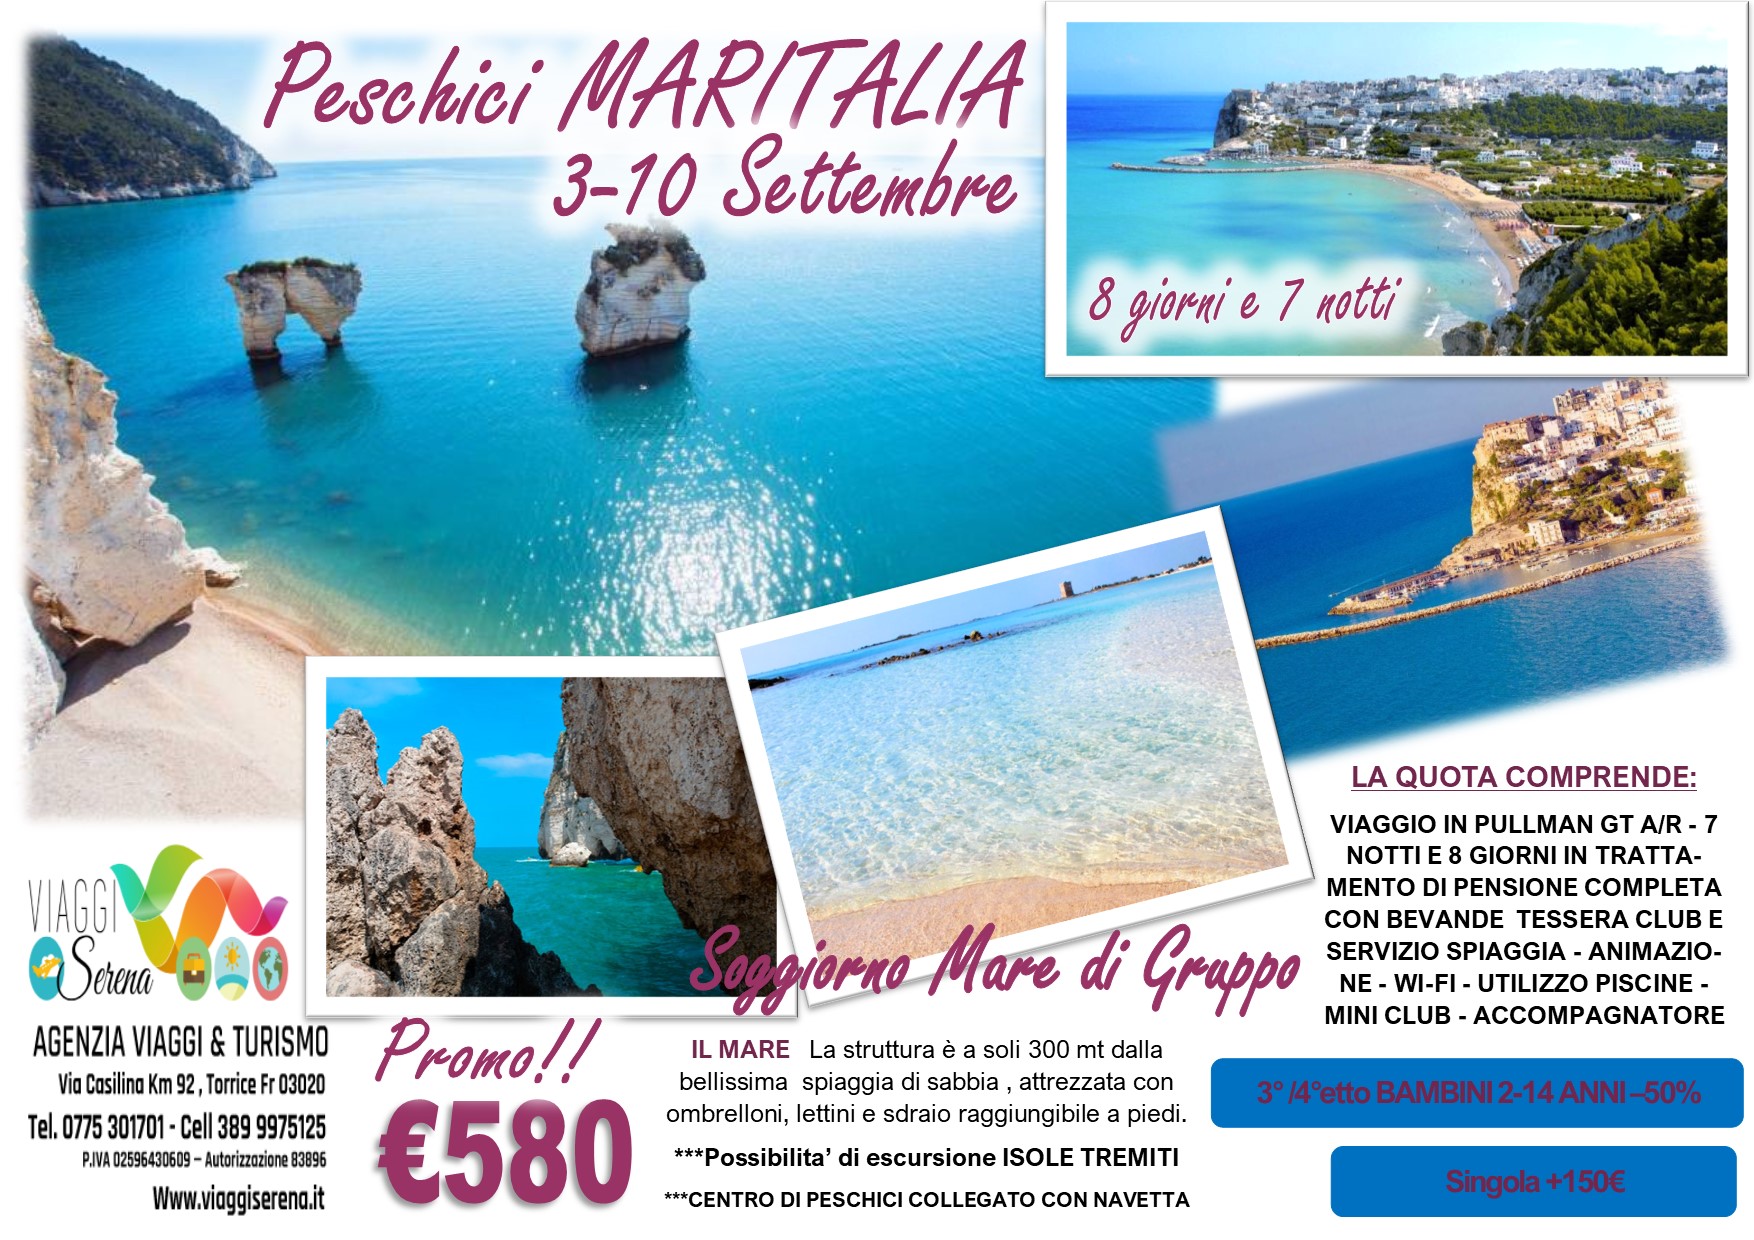 Viaggi di Gruppo: Soggiorno Mare “Villaggio Maritalia” Peschici 3-10 Settembre € 580,00